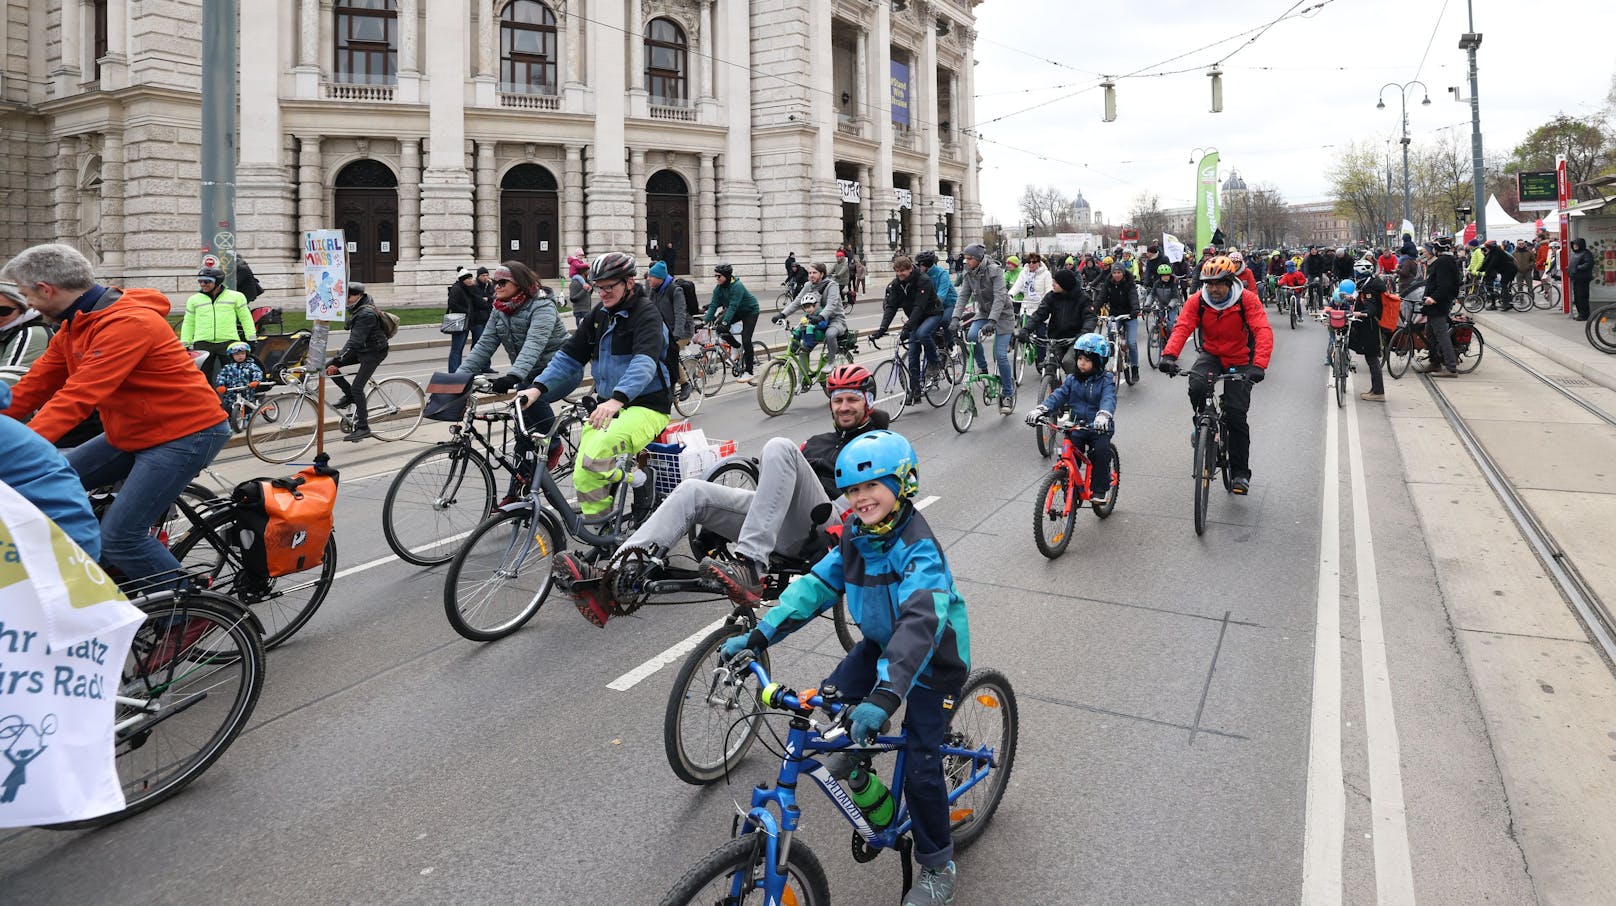 Am 3. Juni gibt es in Wien eine Fahrraddemo extra für Kinder.